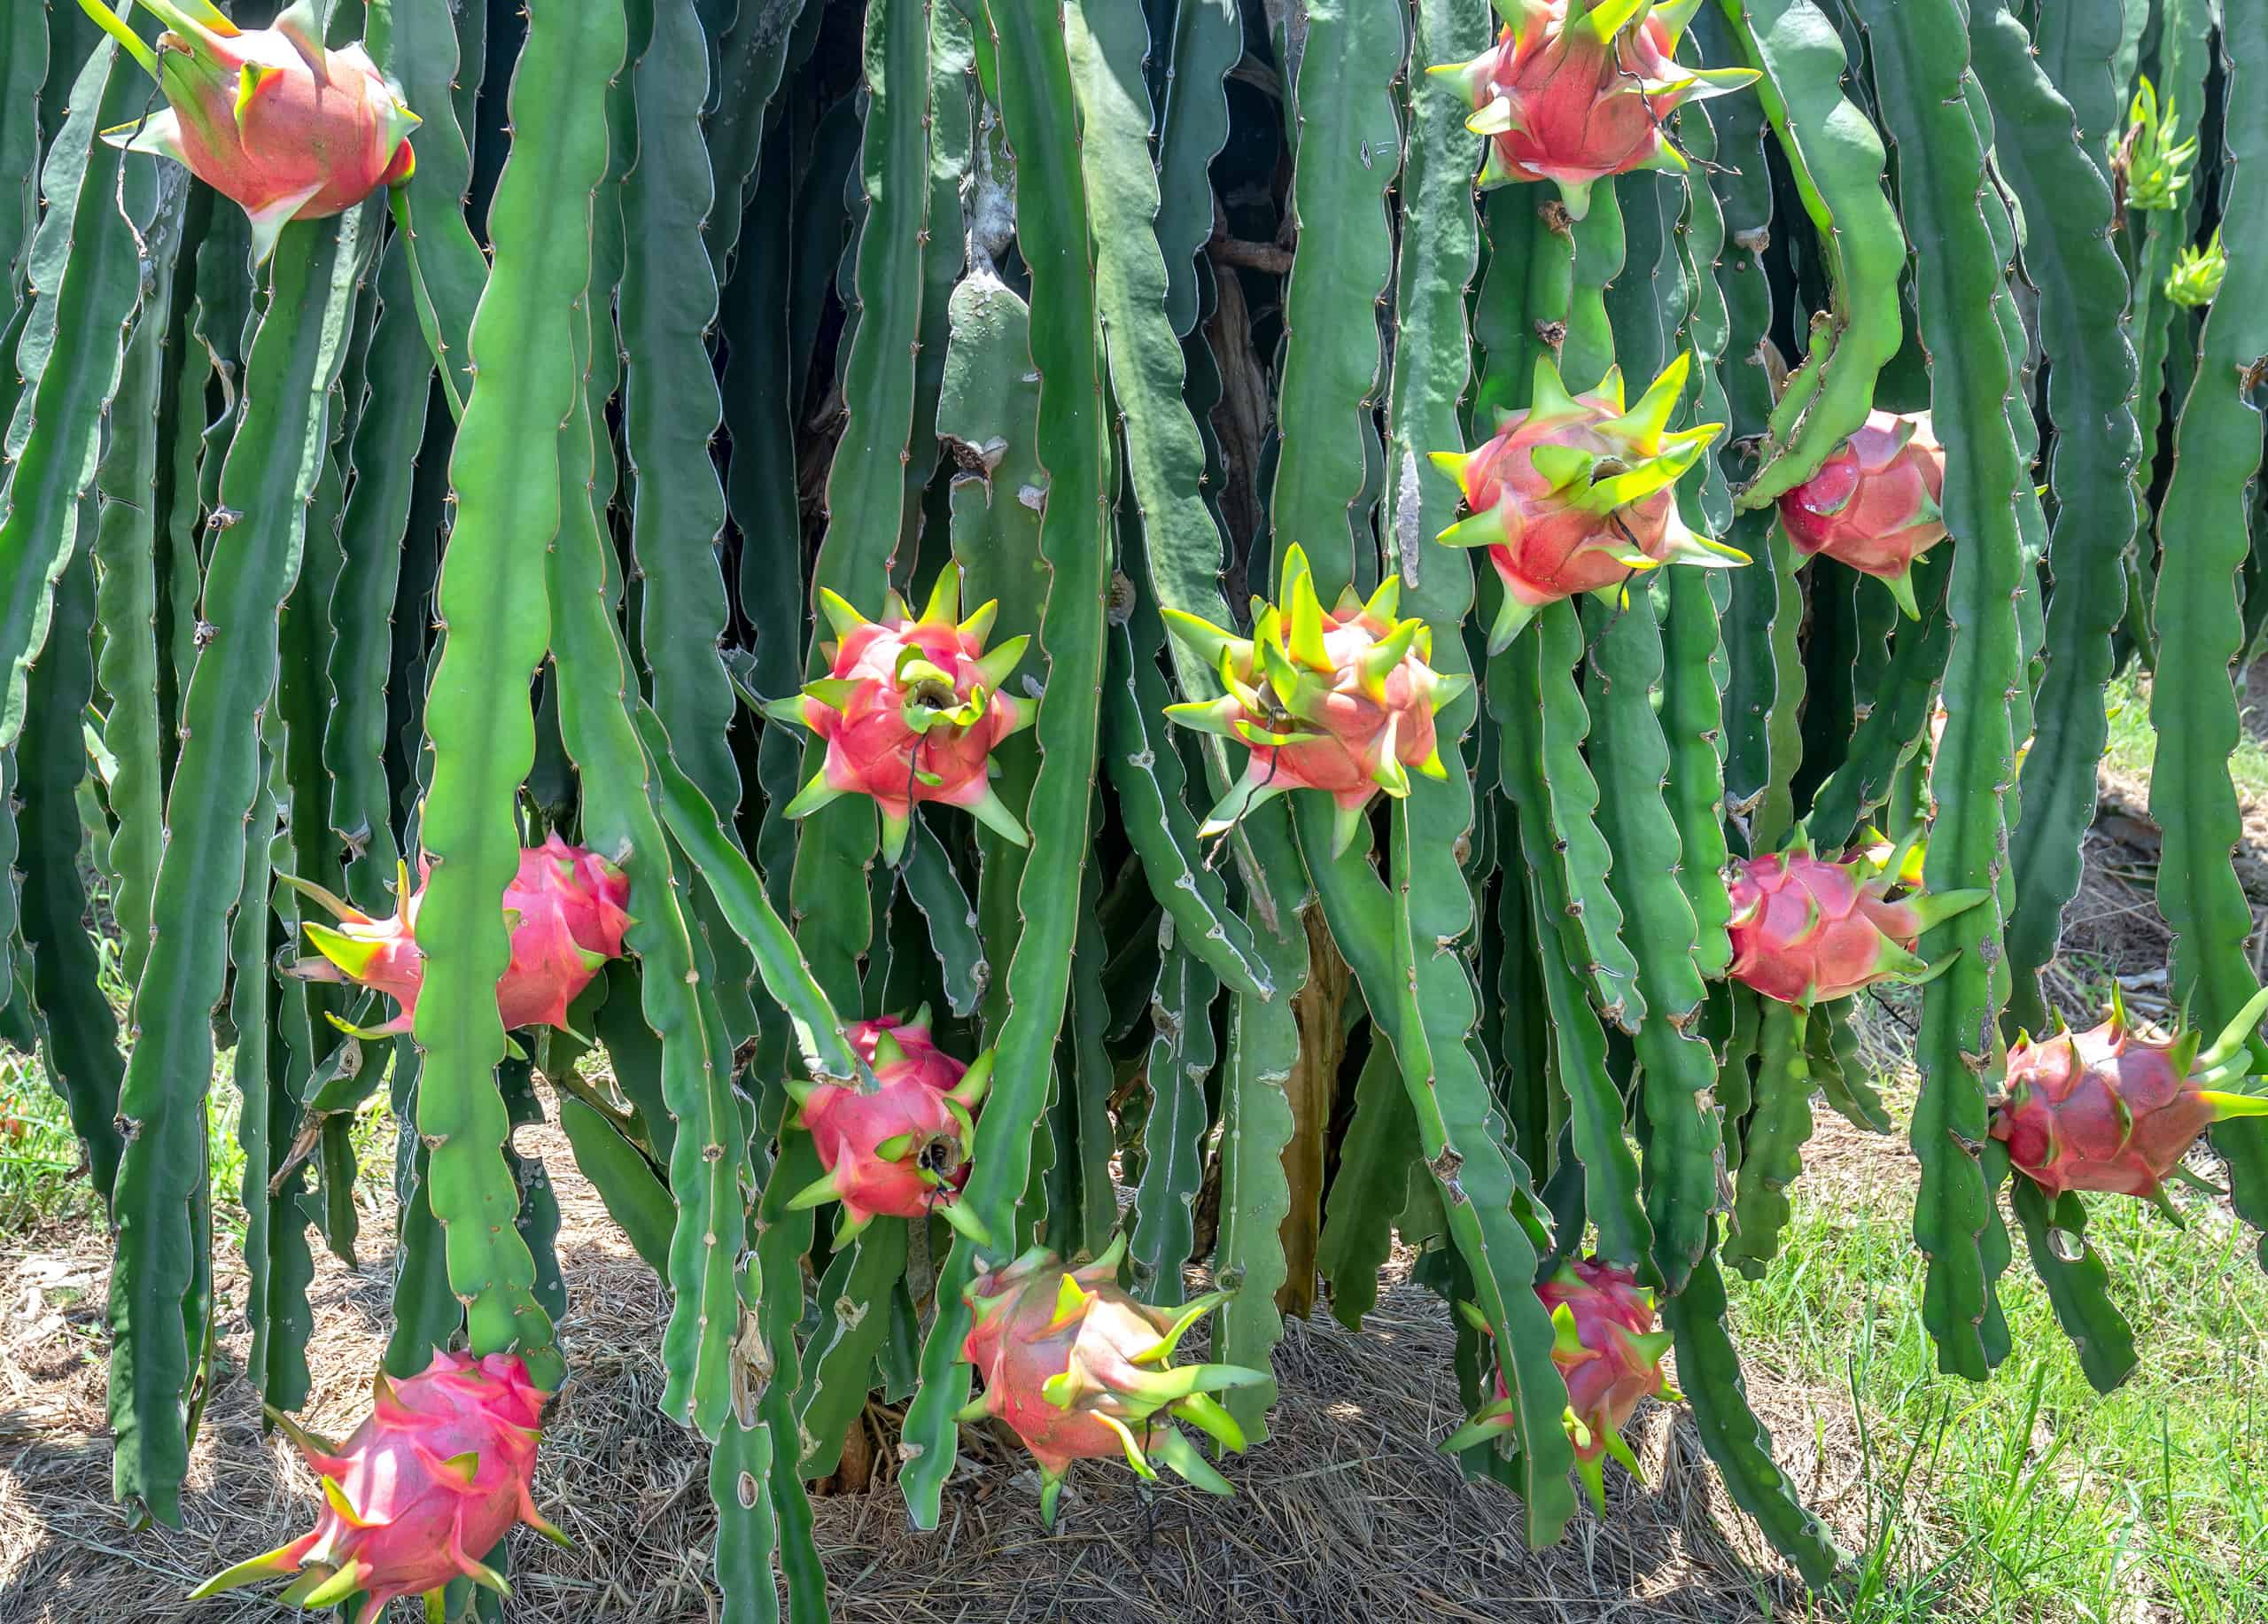 4'' Dragon Fruit Cactus Cutting White Flesh Hylocereus Undatus Pitaya edible